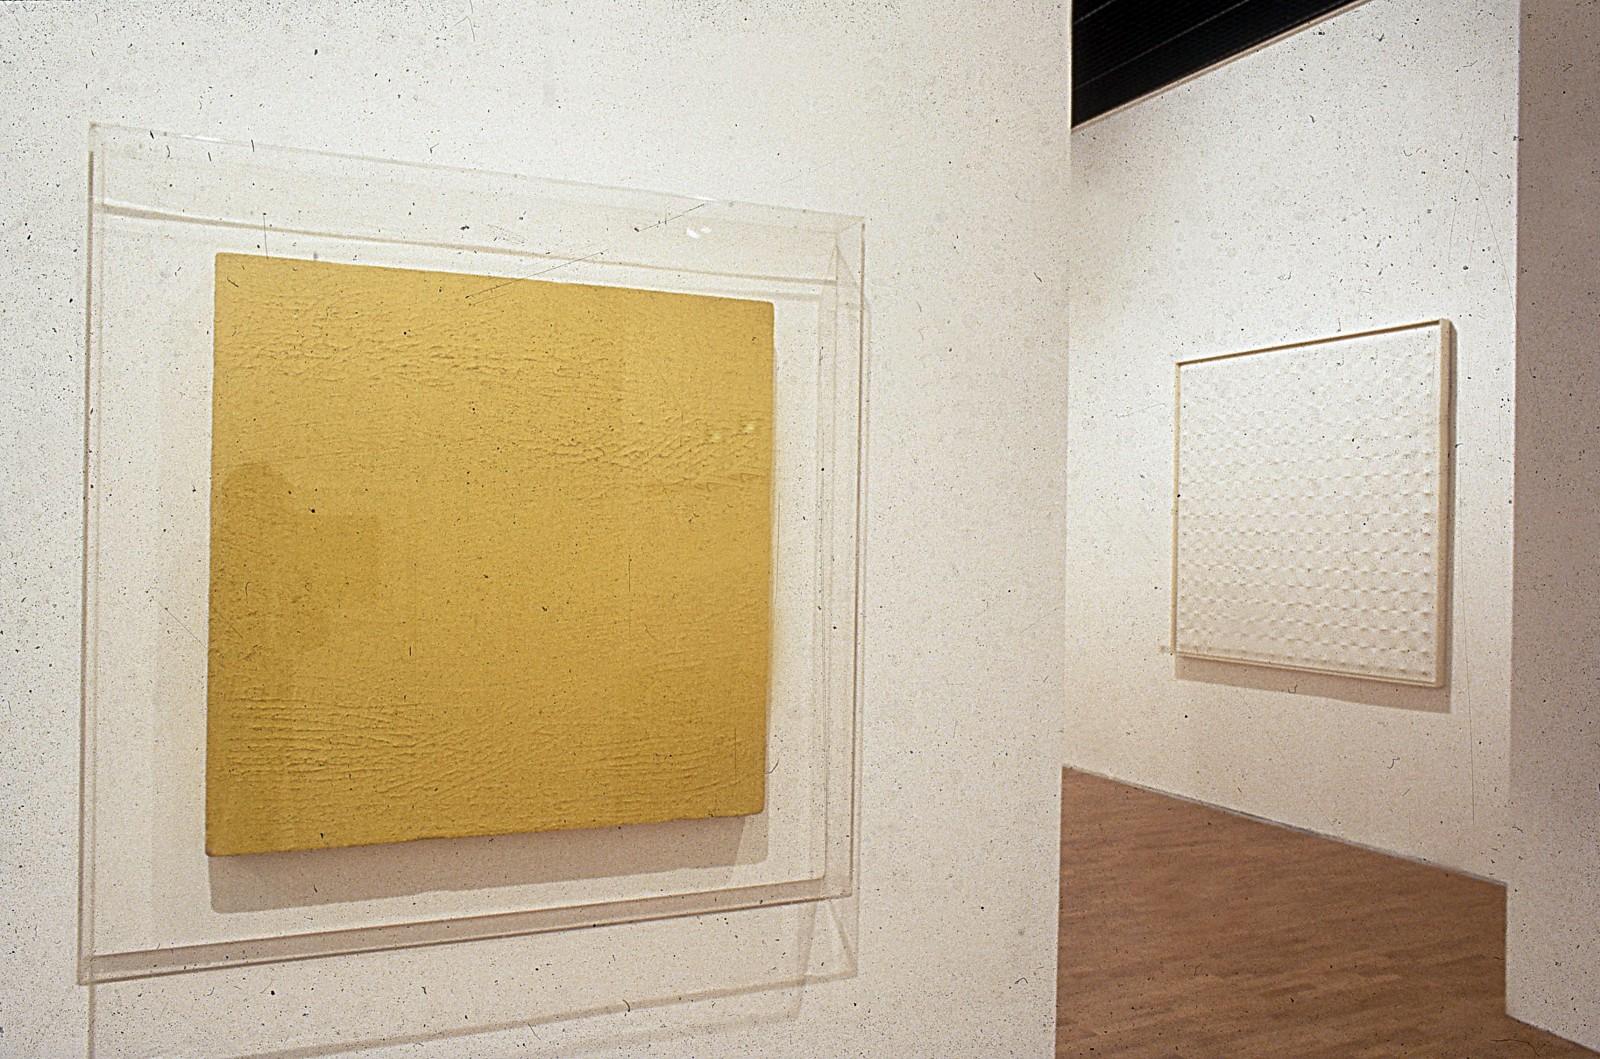 View of the exhibition "La Couleur seule : l'expérience du monochrome", Musée Saint-Pierre art contemporain, 1988 (M 46)